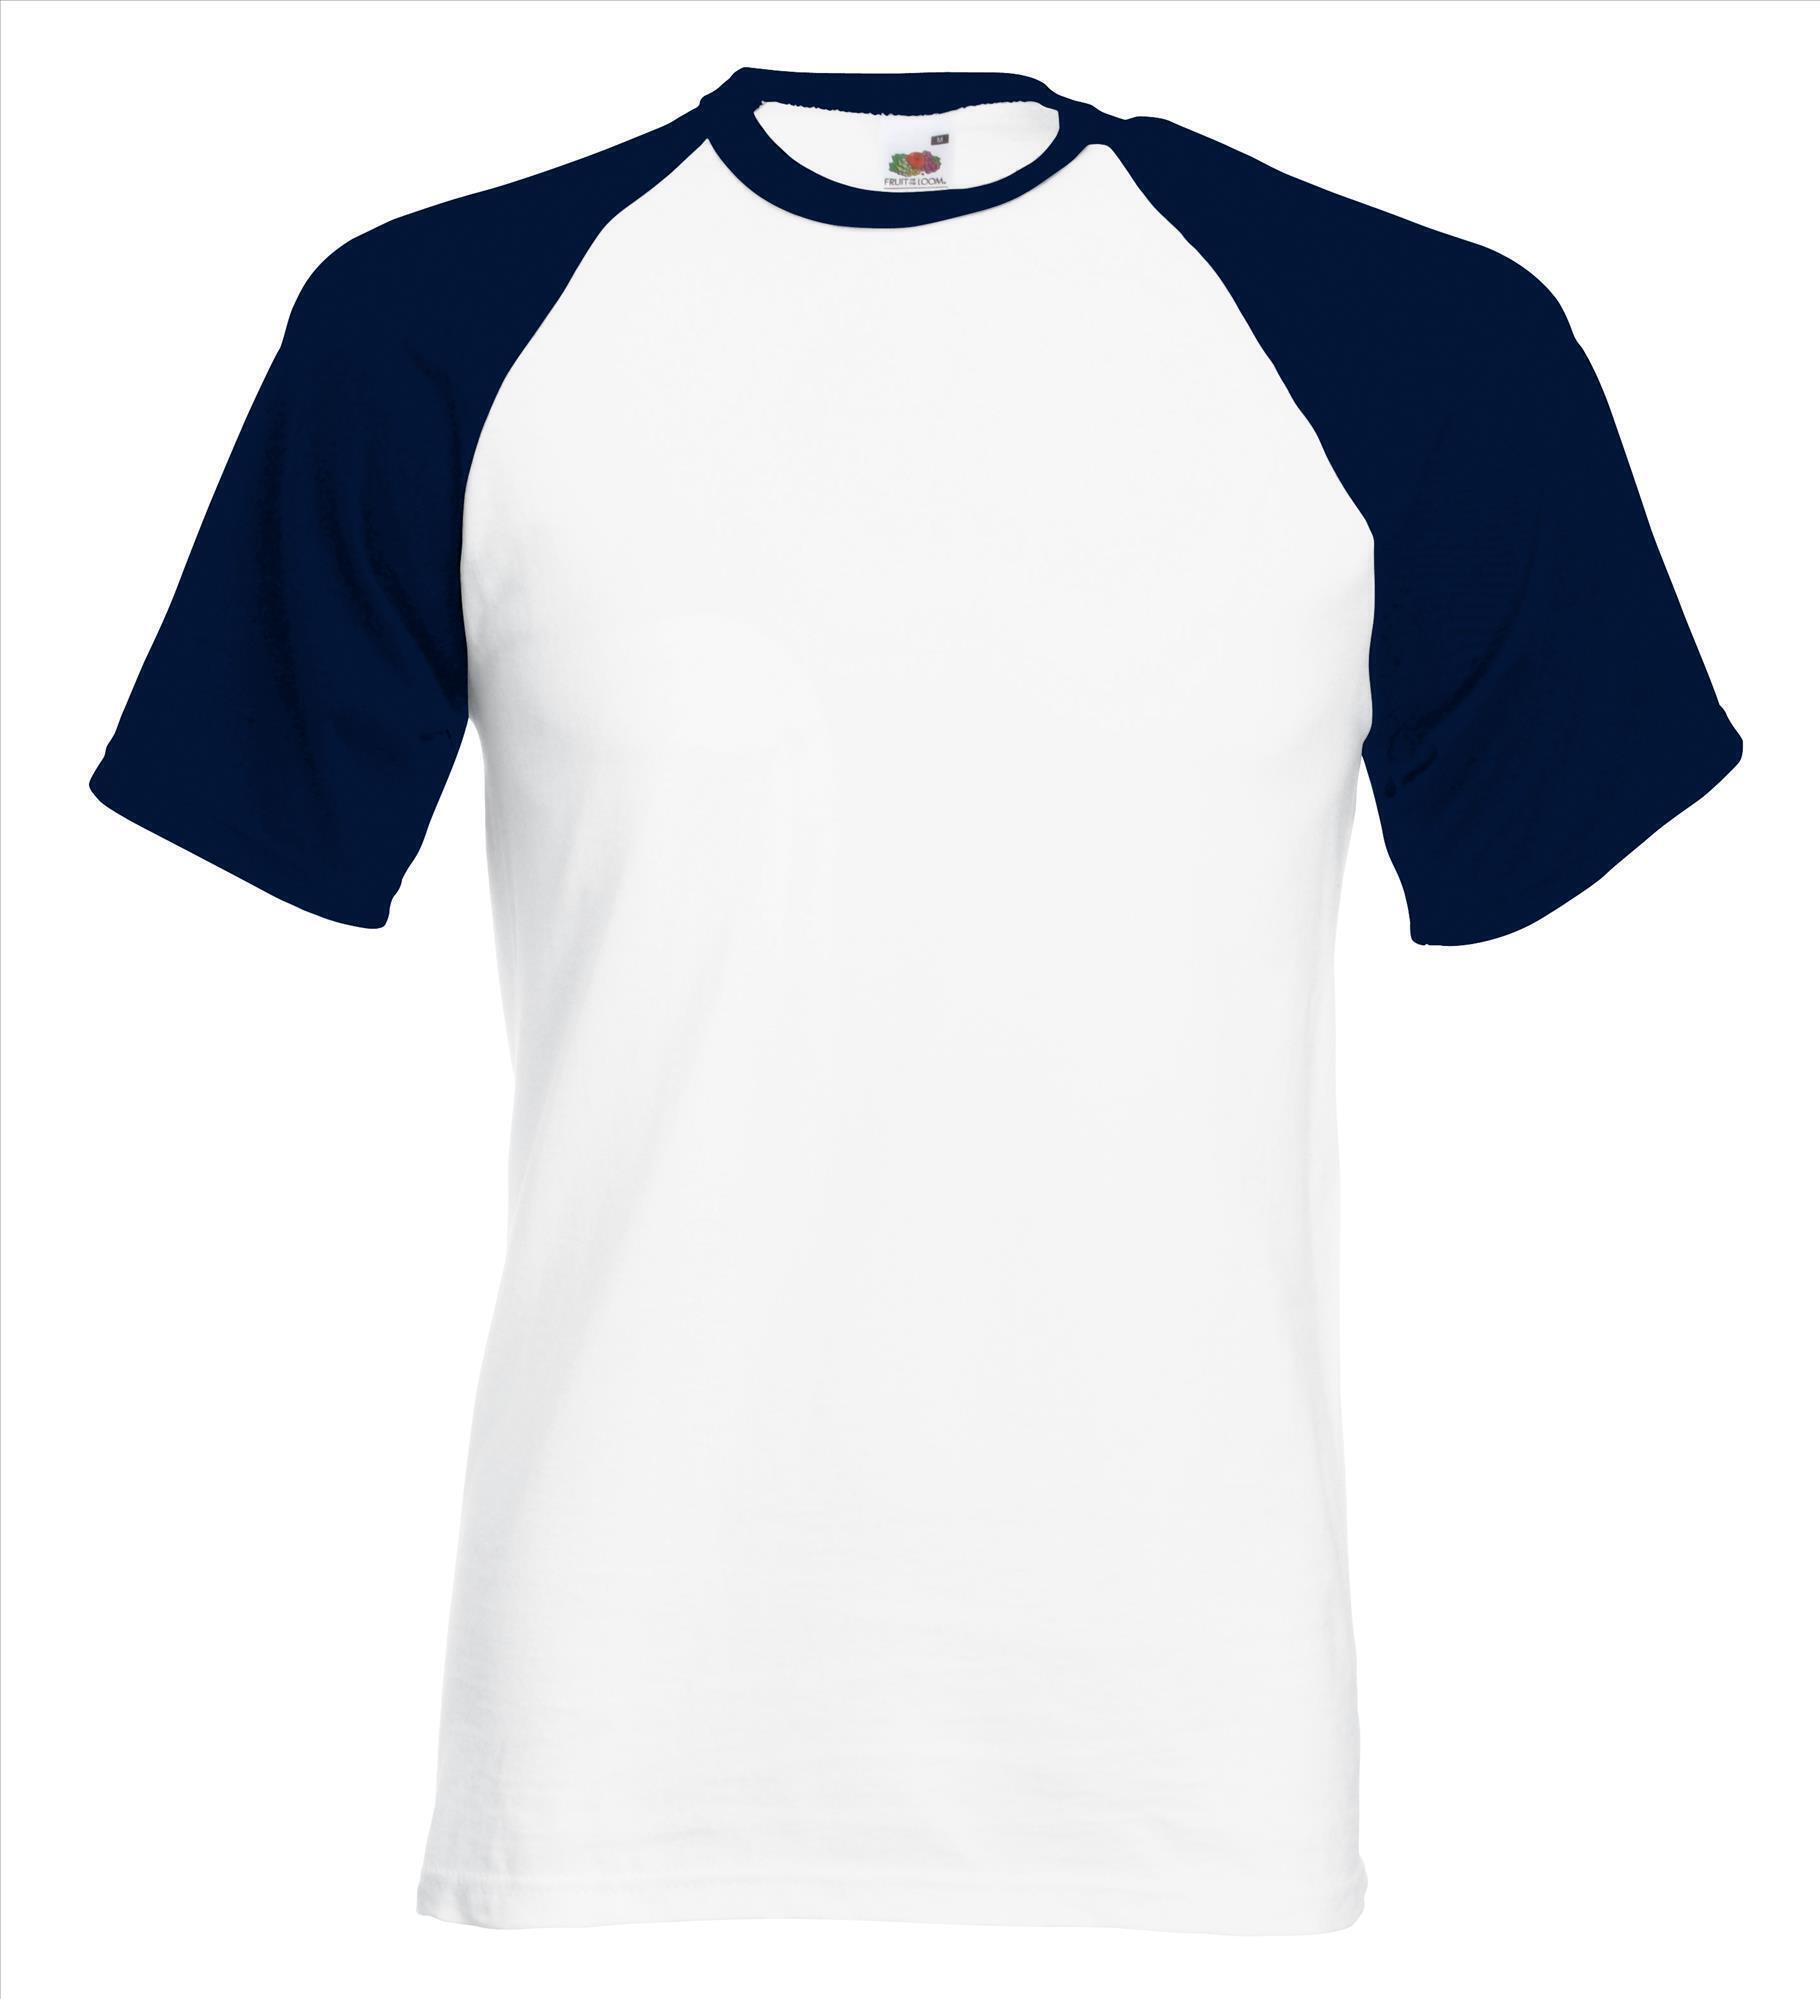 Heren T-shirt met raglanmouwen voor mannen wit shirt met donker blauwe mouwen